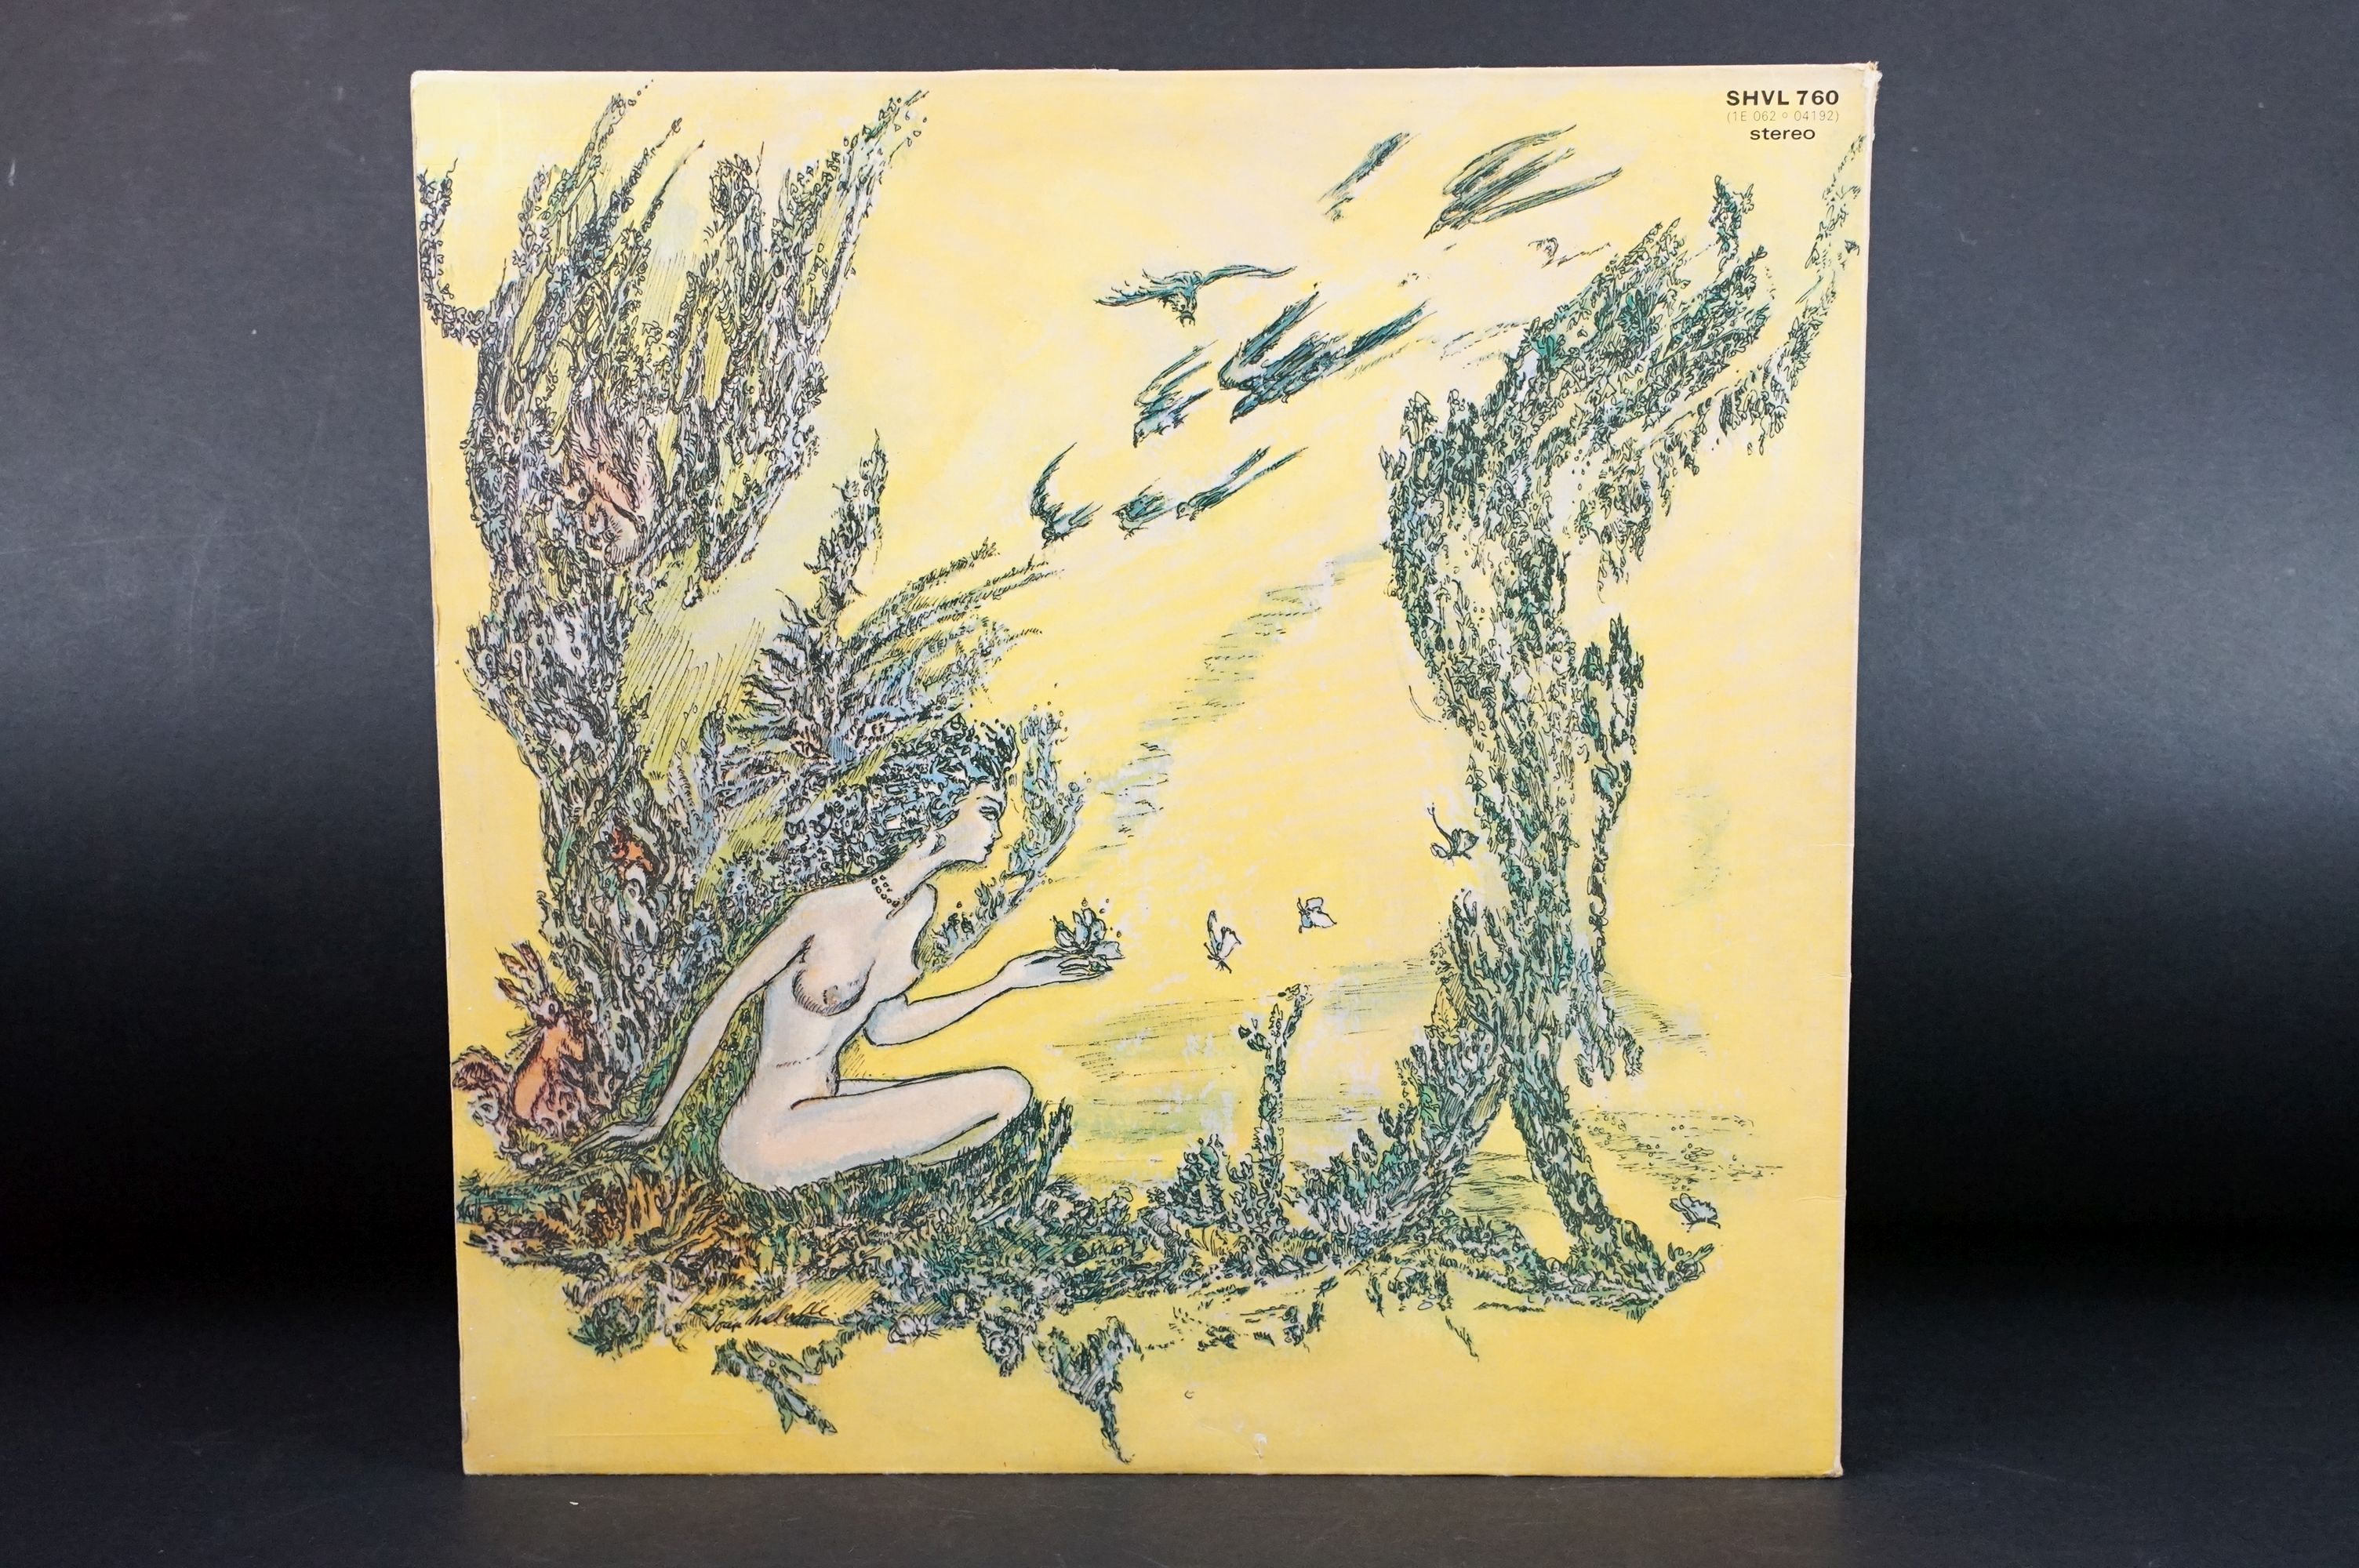 Vinyl - Forest self titled LP on Harvest Records SHVL 760. Original UK 1st pressing, no EMI on - Image 7 of 7